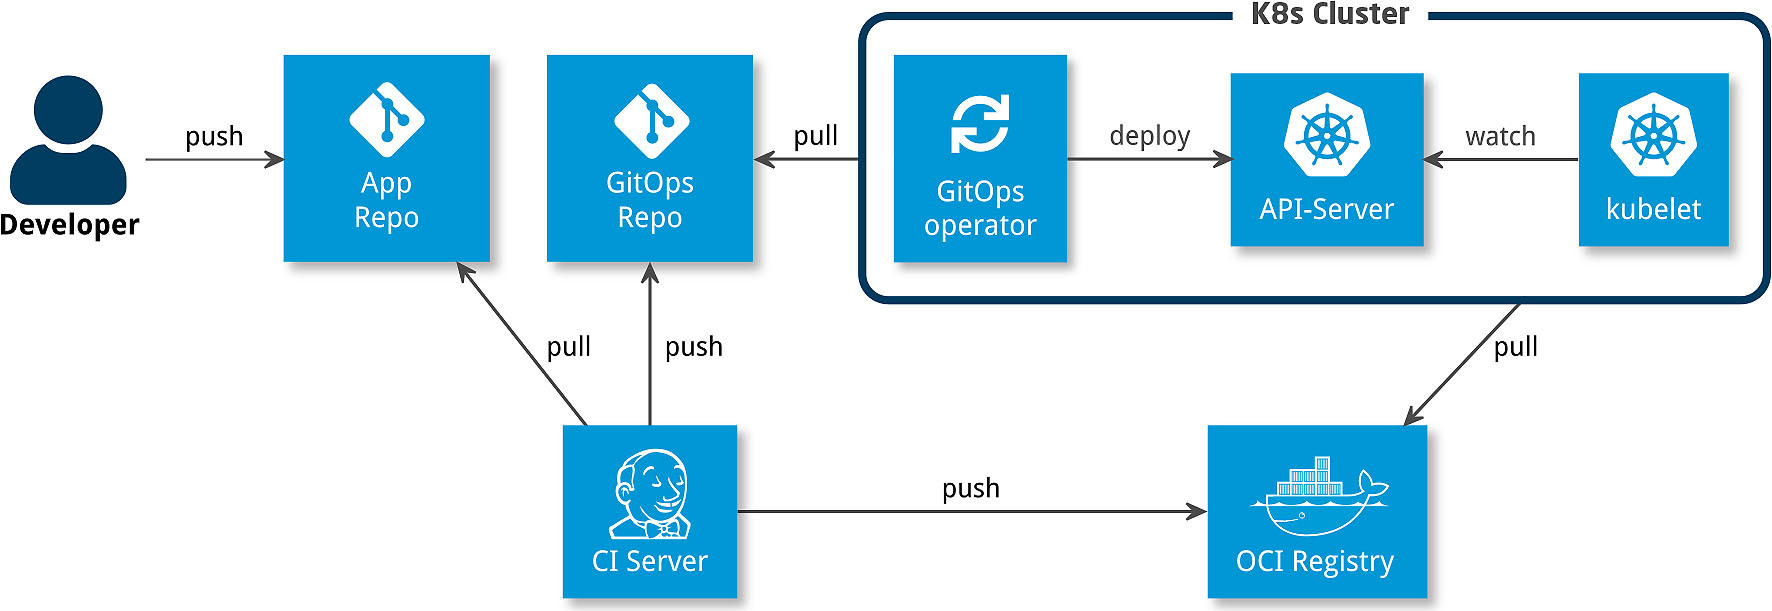 Abbildung 2 zeigt das Deployment mit App-Repository und GitOps-Repository. (Bild: Cloudogu GmbH)